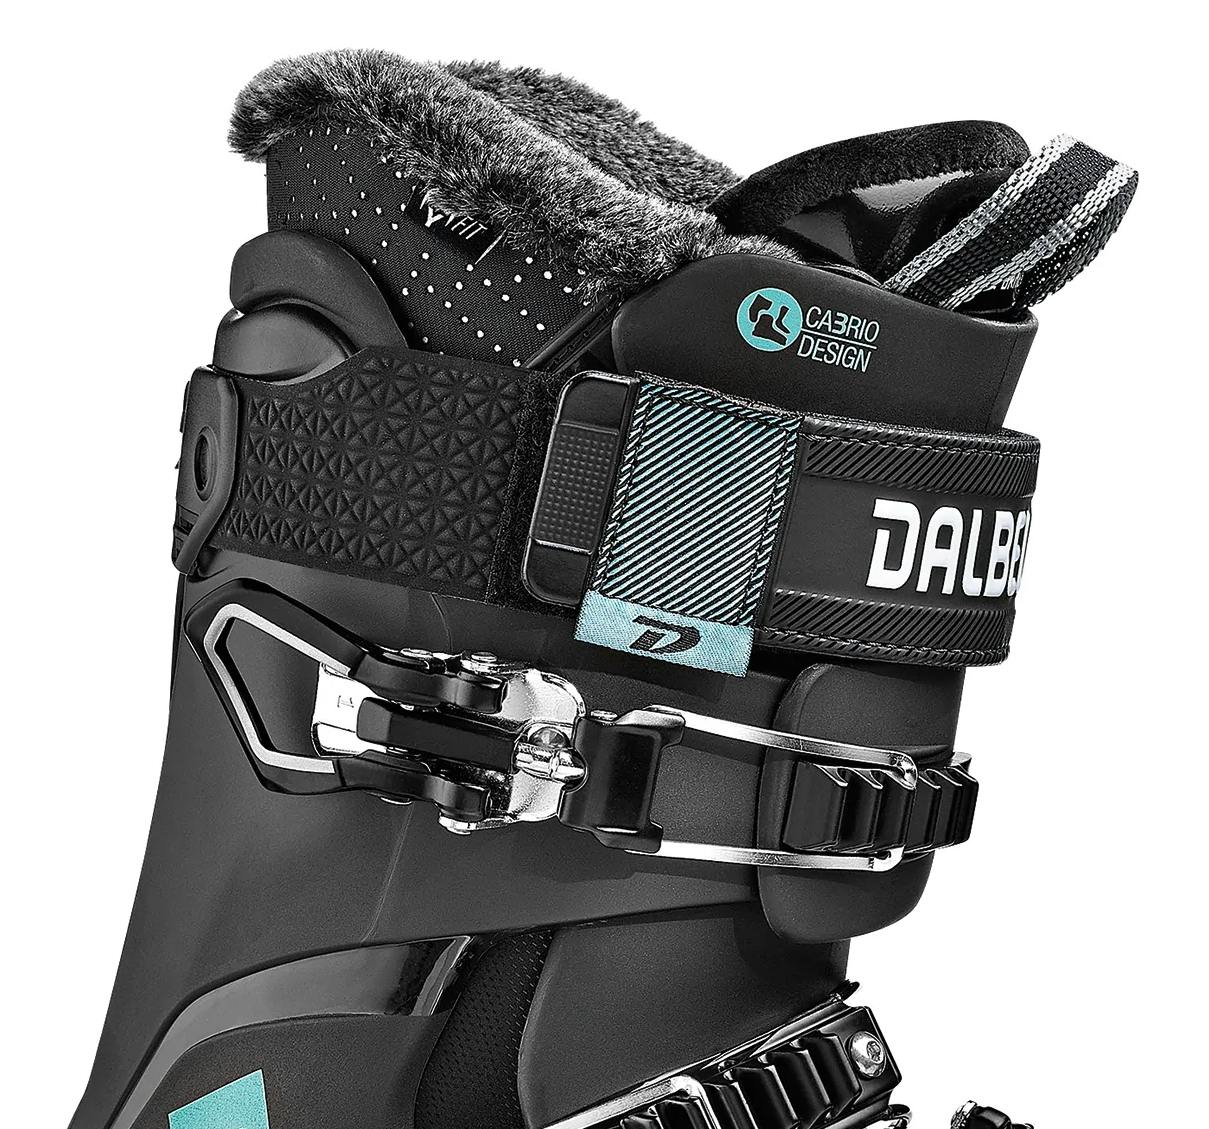 Dalbello Chakra AX 95 Ski Boots · Women's · 2022